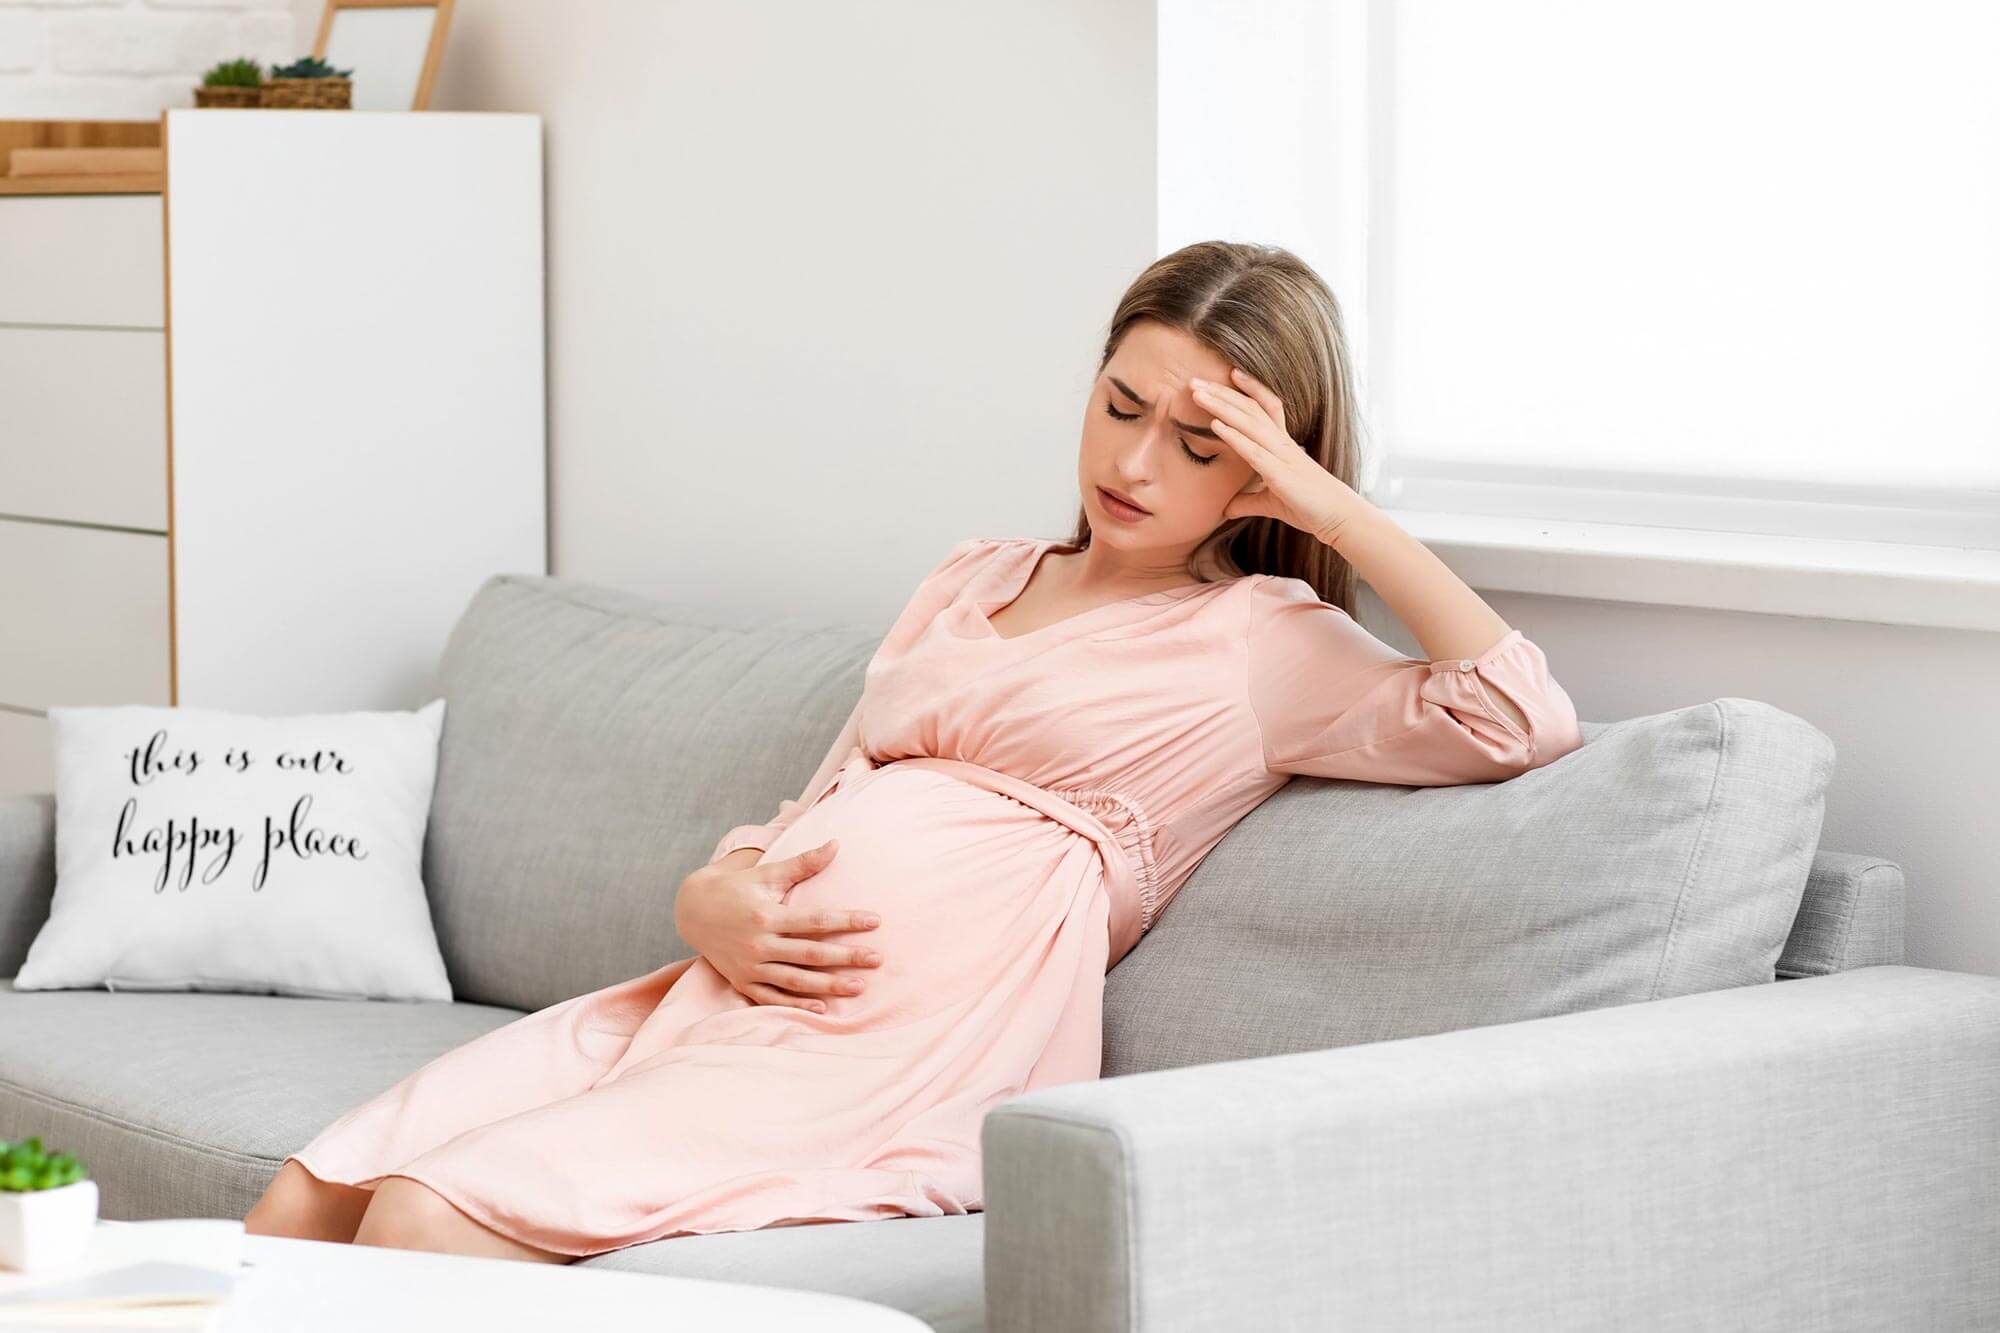 العلم يحذرك : التوتر أثناء الحمل قد يؤثر سلبيًأ على الأطفال!